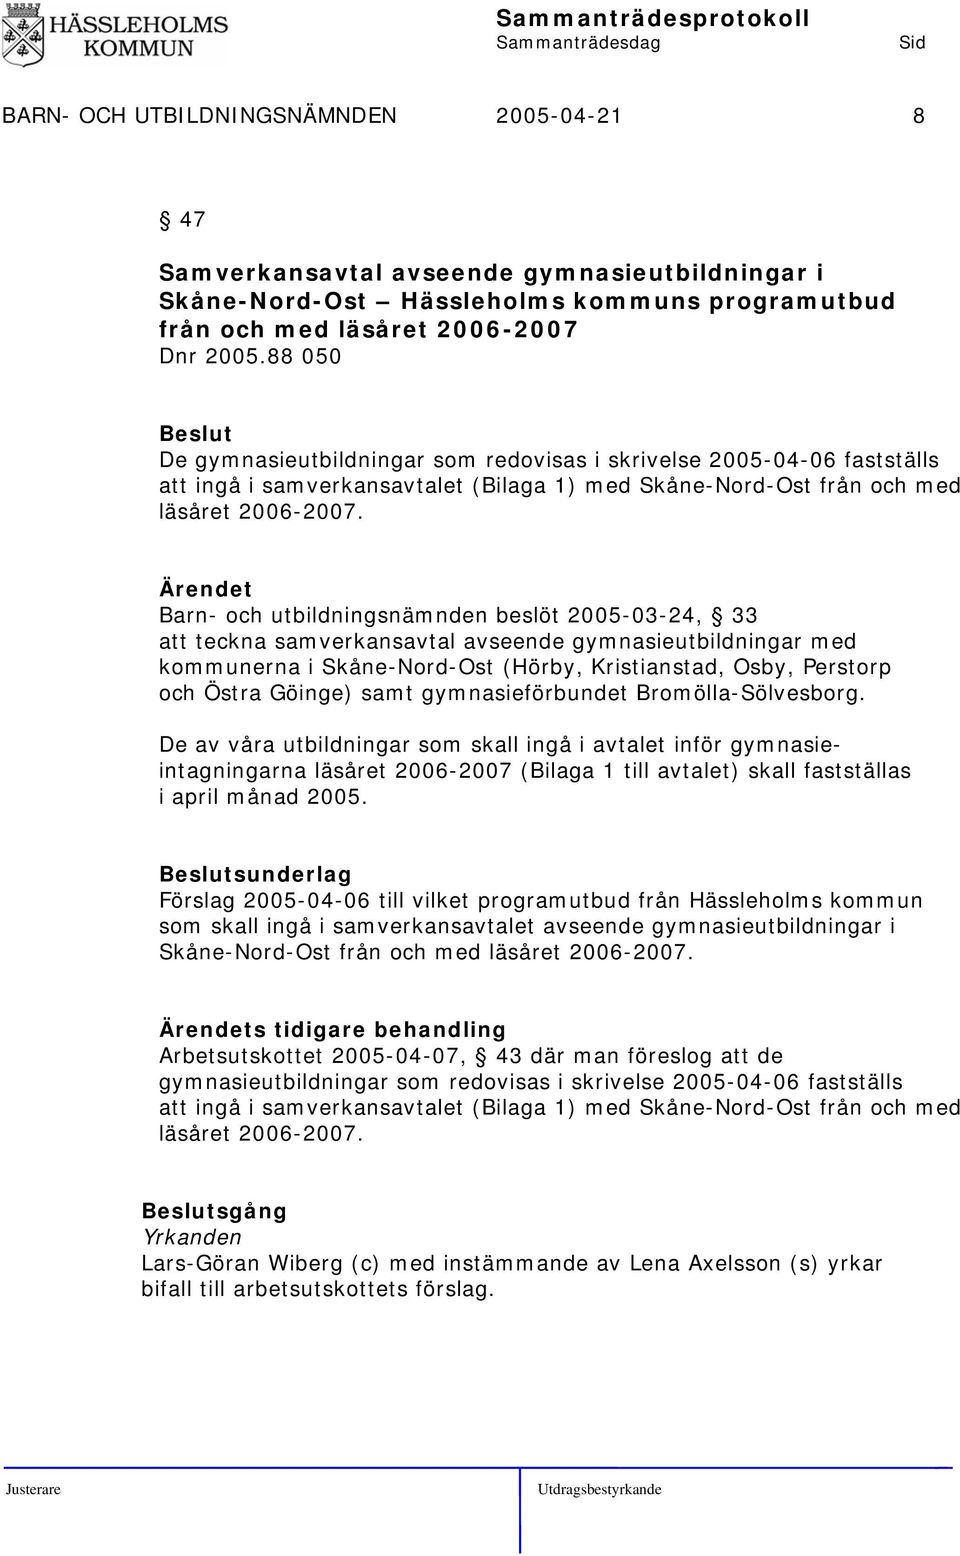 Barn- och utbildningsnämnden beslöt 2005-03-24, 33 att teckna samverkansavtal avseende gymnasieutbildningar med kommunerna i Skåne-Nord-Ost (Hörby, Kristianstad, Osby, Perstorp och Östra Göinge) samt